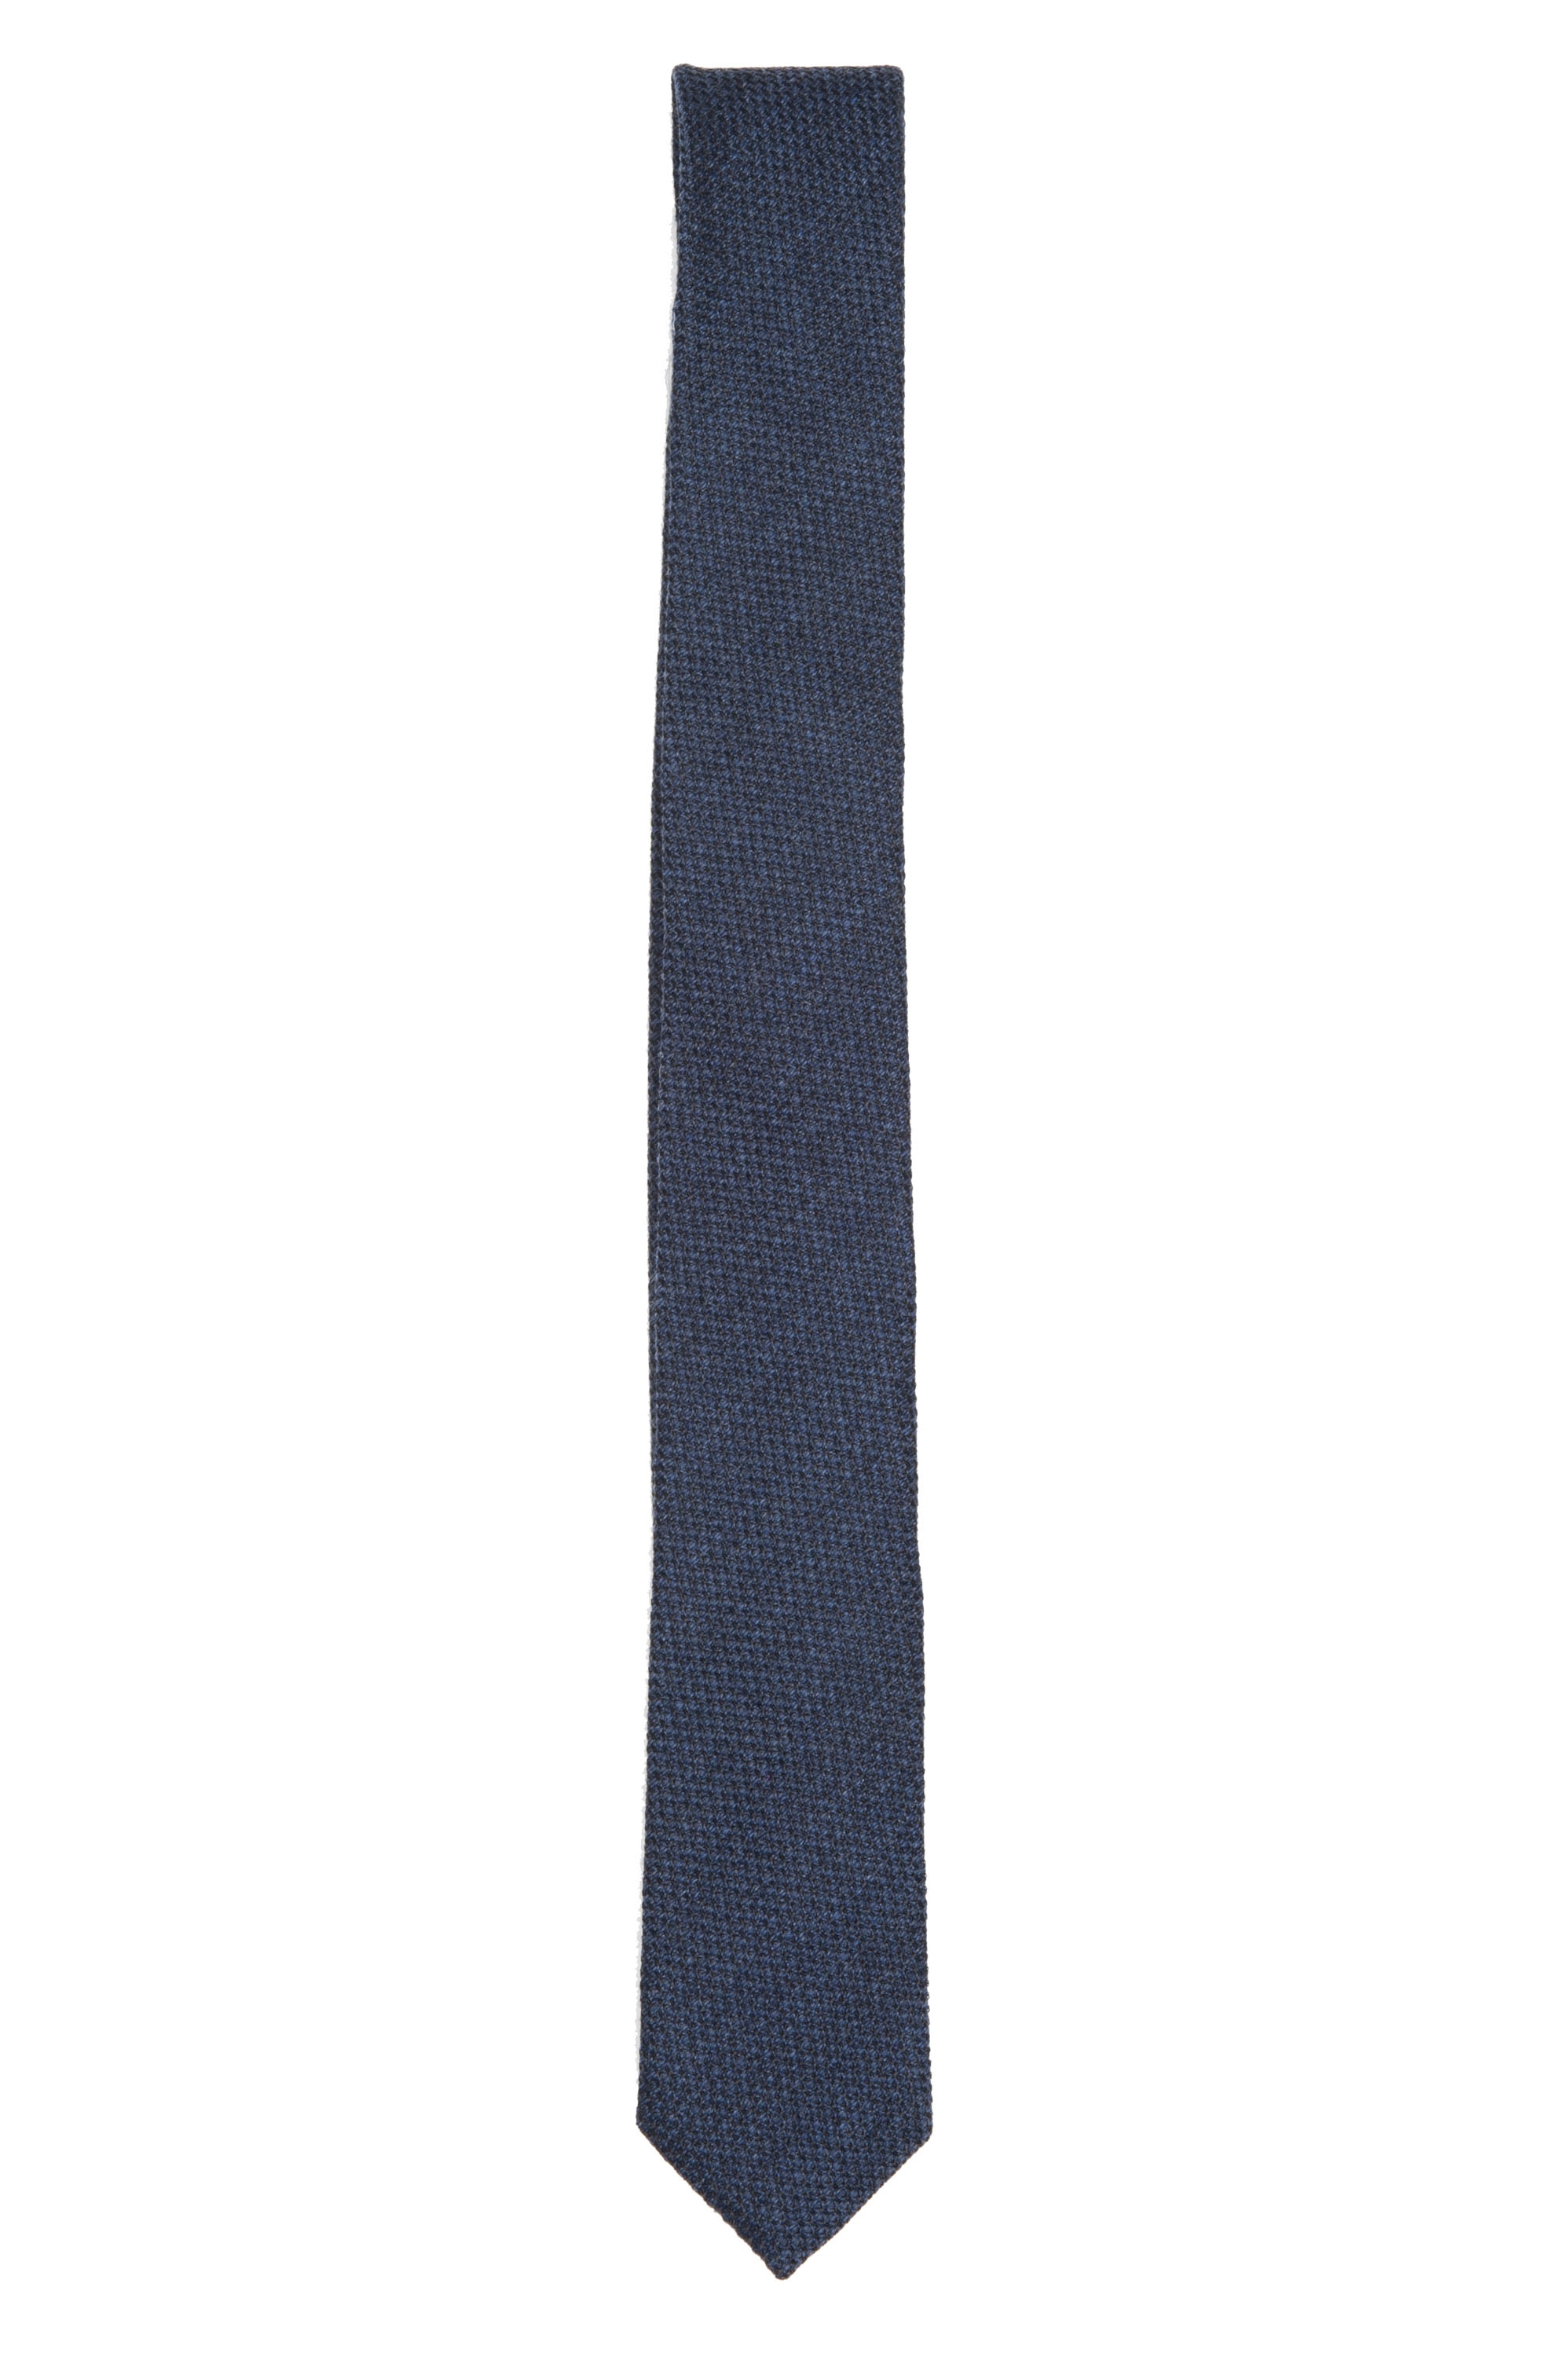 SBU 01571 Corbata clásica de punta fina en lana y seda azul 01